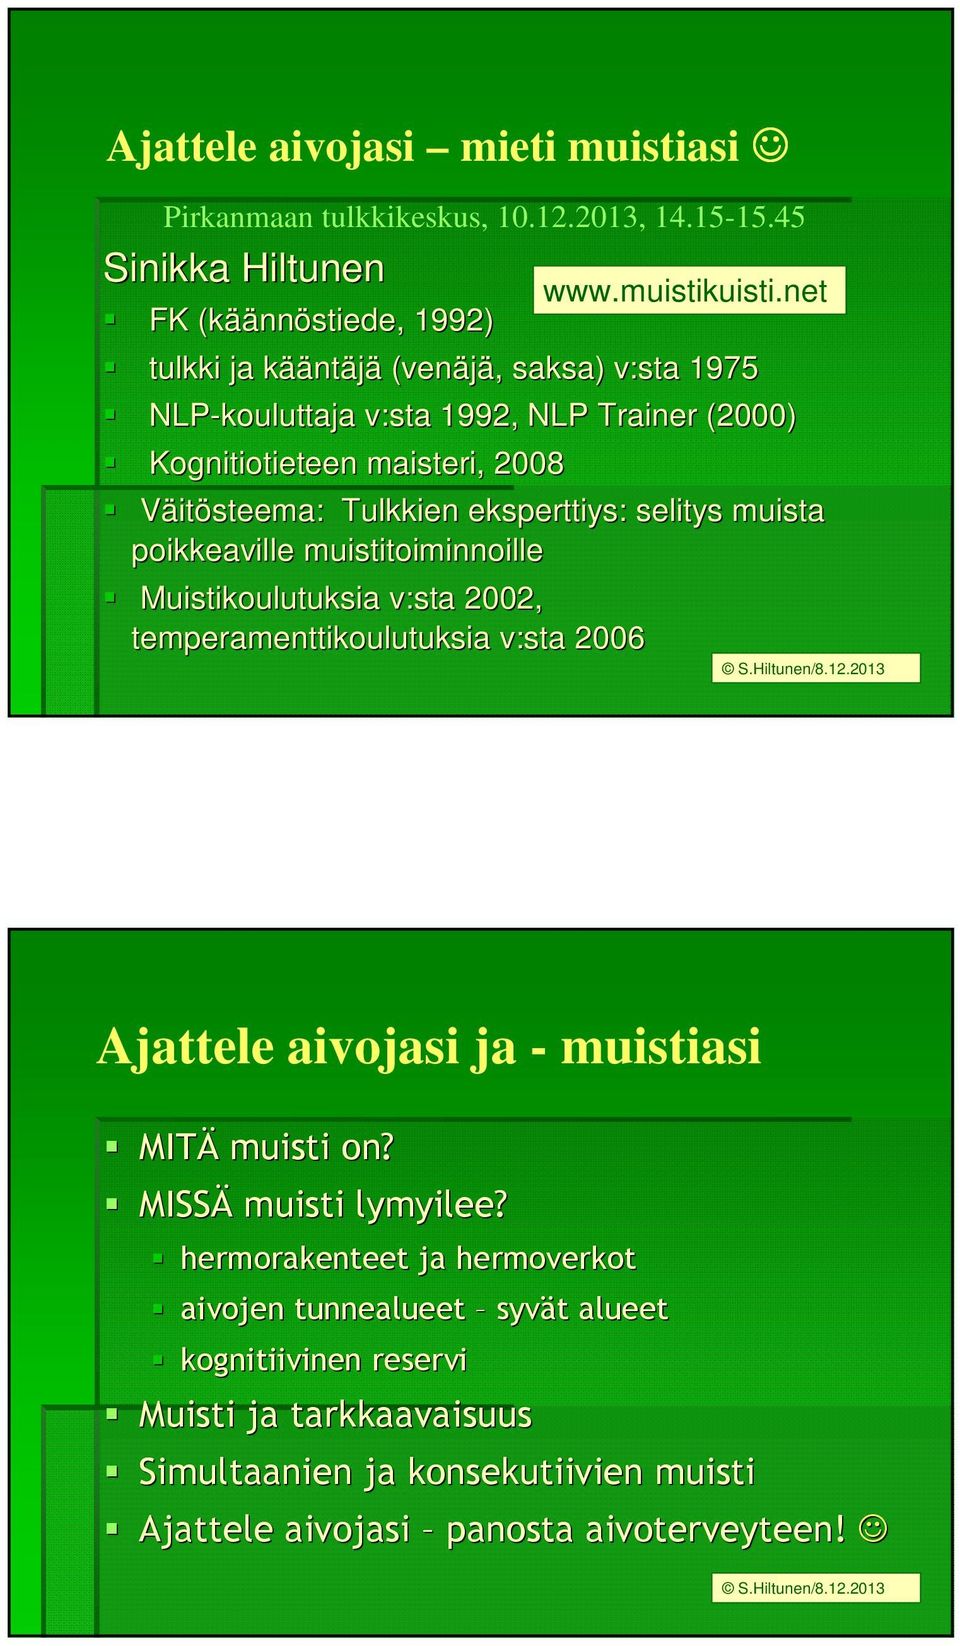 2008 Väitösteema: Tulkkien eksperttiys: selitys muista poikkeaville muistitoiminnoille Muistikoulutuksia v:sta 2002, temperamenttikoulutuksia v:sta 2006 www.muistikuisti.